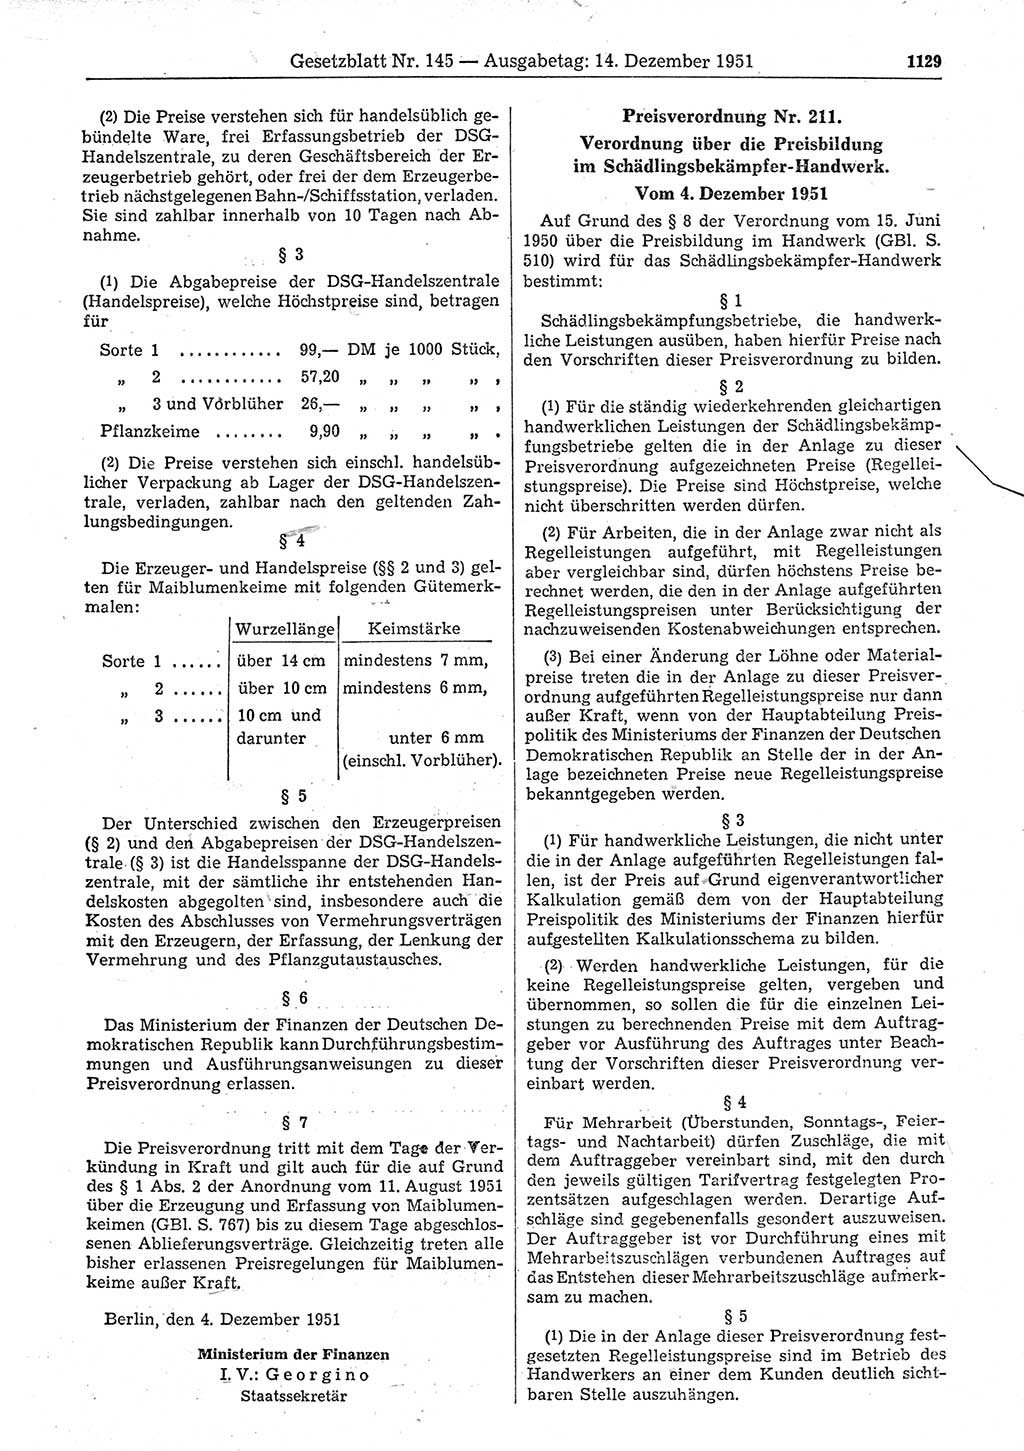 Gesetzblatt (GBl.) der Deutschen Demokratischen Republik (DDR) 1951, Seite 1129 (GBl. DDR 1951, S. 1129)